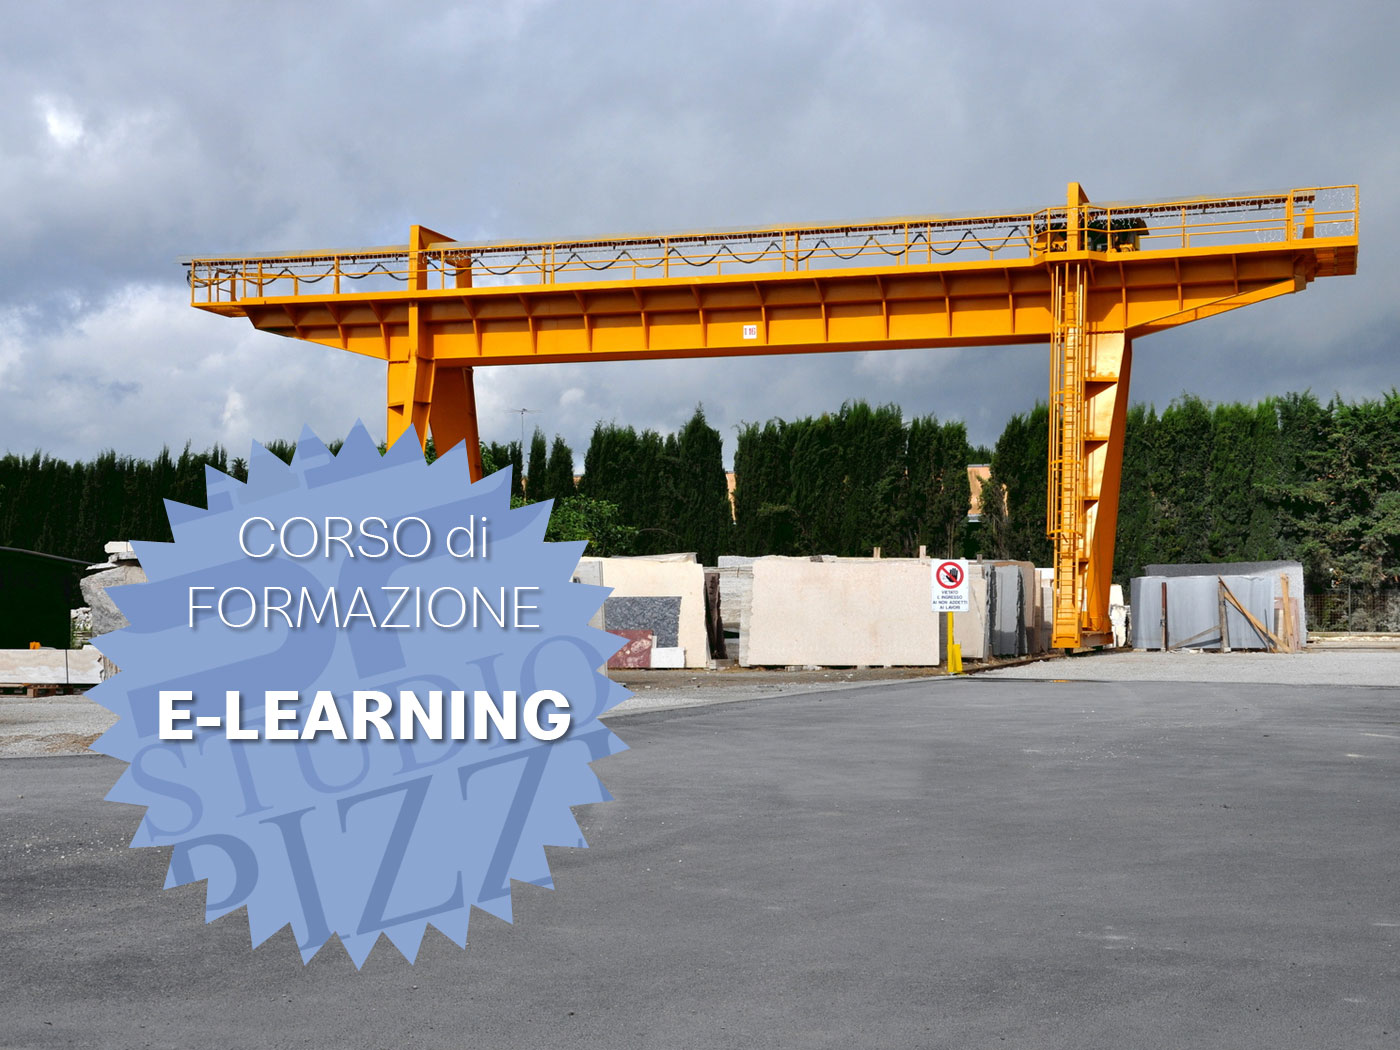 Studio PIZZI - formazione attrezzature lavoro carroponte - e-learning